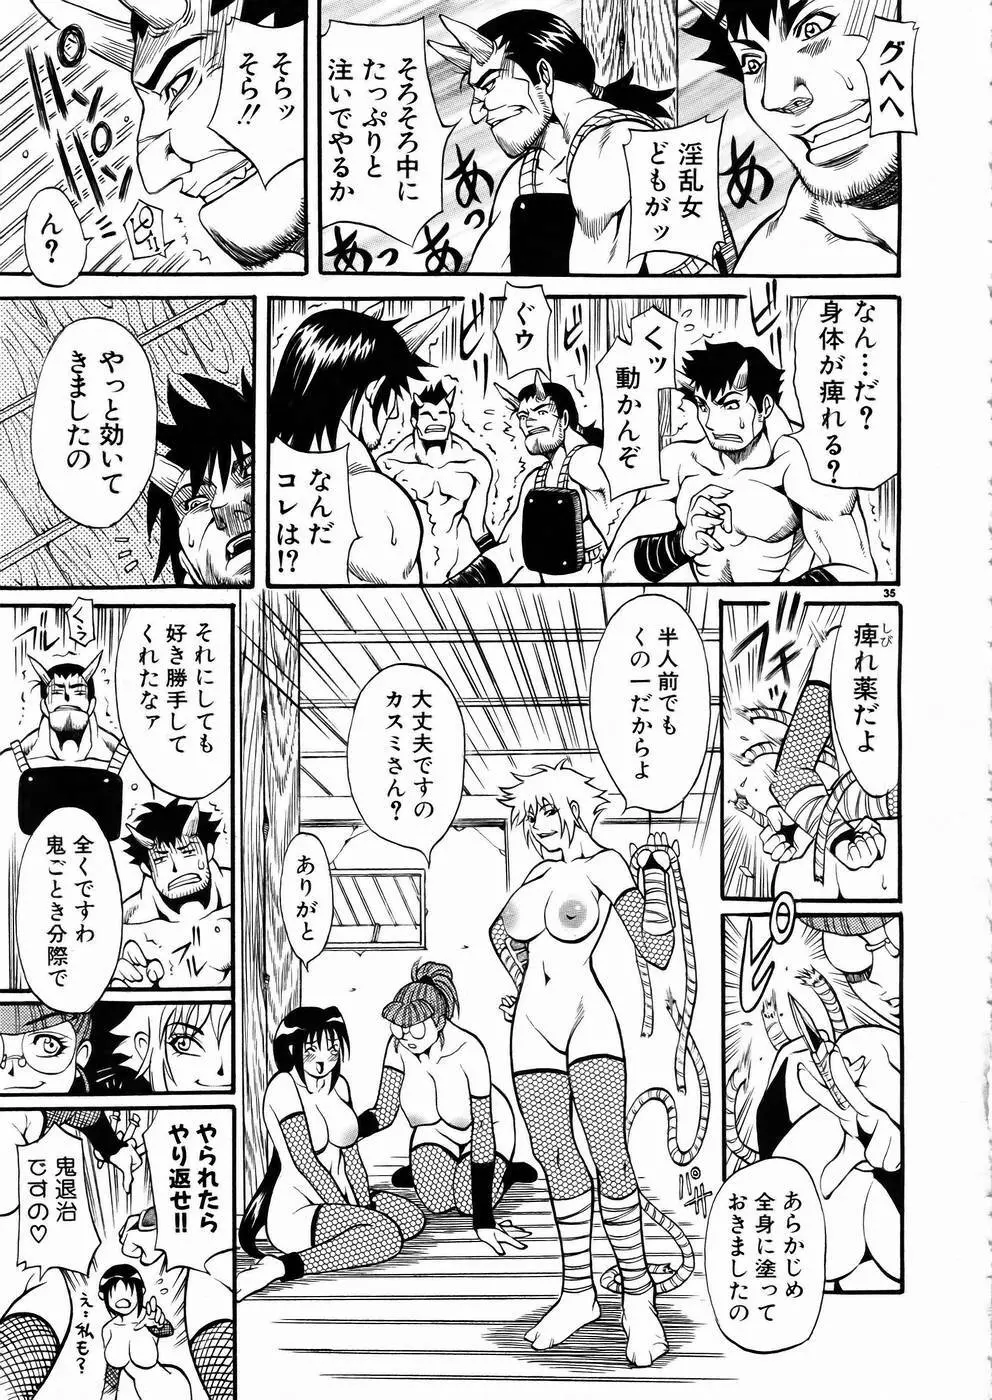 少女剣客凌辱コミック Vol.01 くノ一斬! 34ページ